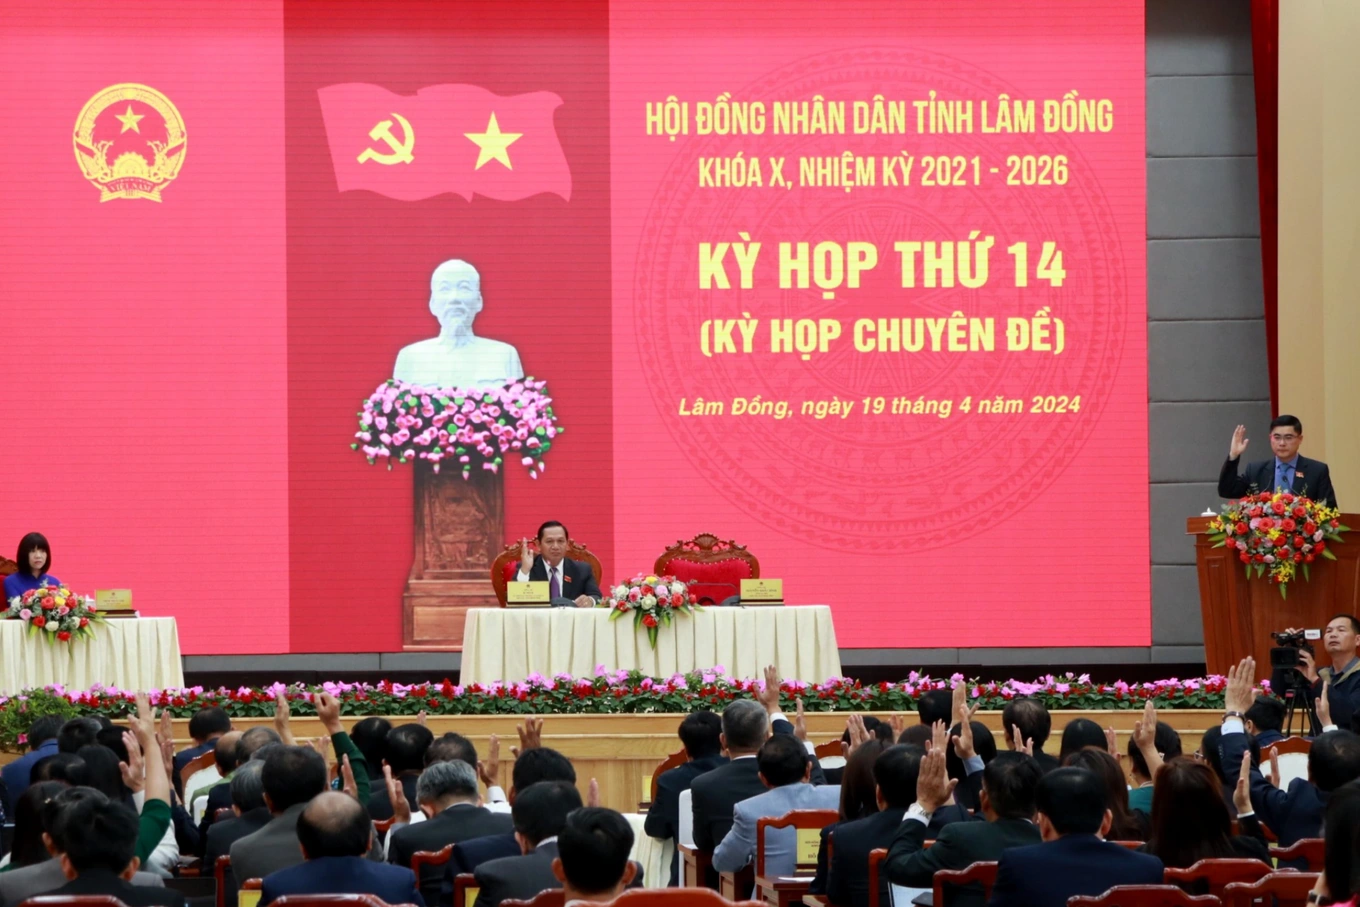 100% đại biểu HHĐND tỉnh Lâm Đồng khóa X, nhiệm kỳ 2021 - 2026 biểu quyết bãi nhiệm chức vụ đối với Bí thư Tỉnh ủy và Chủ tịch UBND tỉnh Lâm Đồng (Ảnh: Mai Hương).